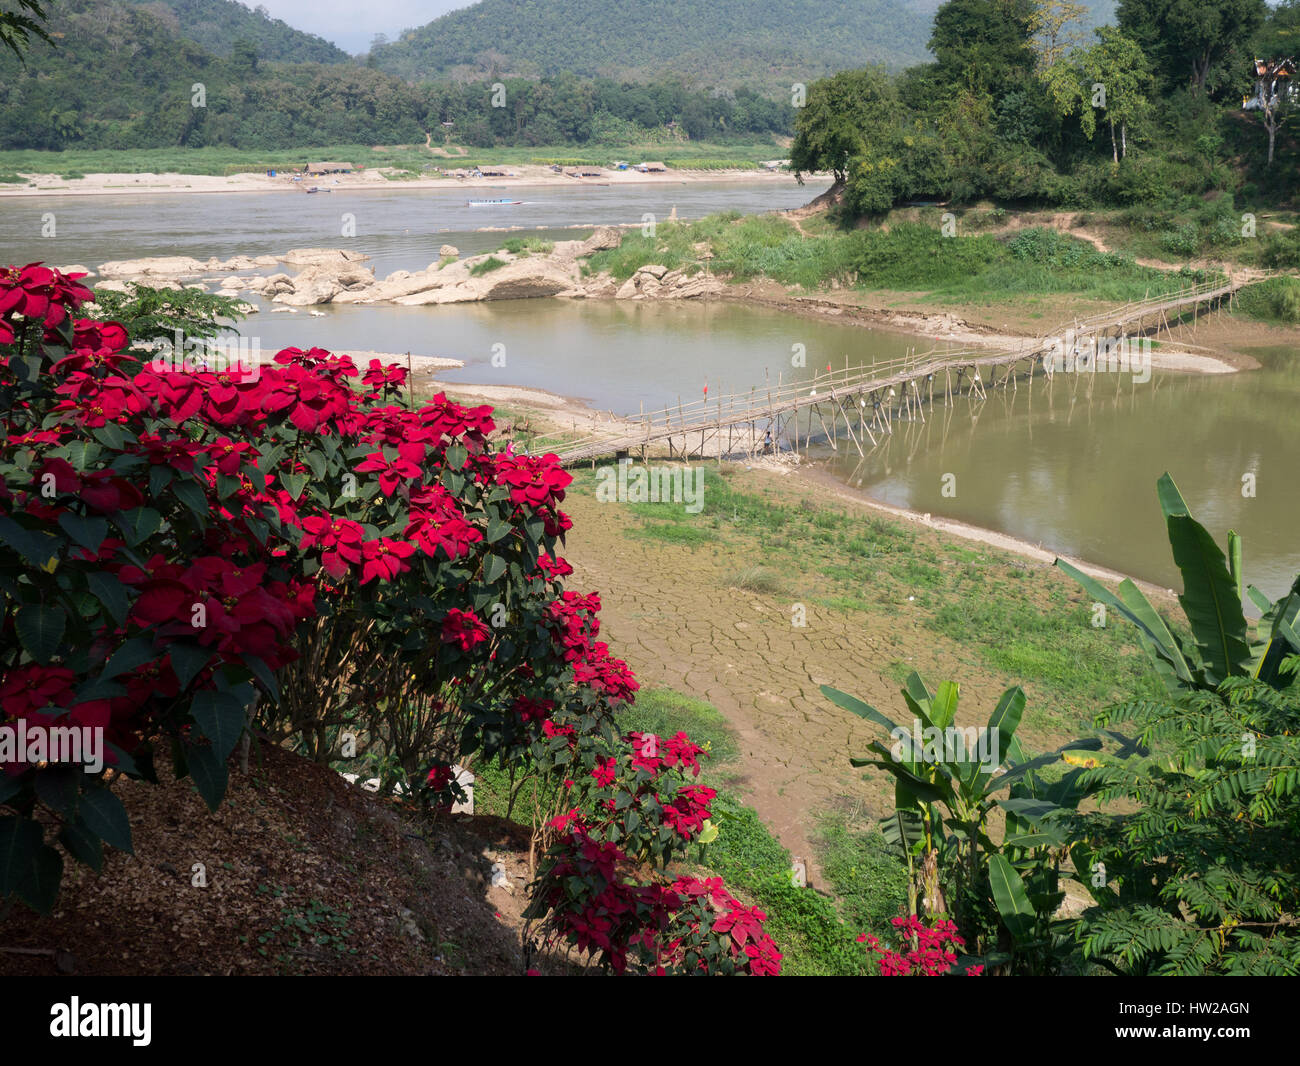 Buscando una endeble pasarela sobre un afluente del río Mekong. Foto de stock